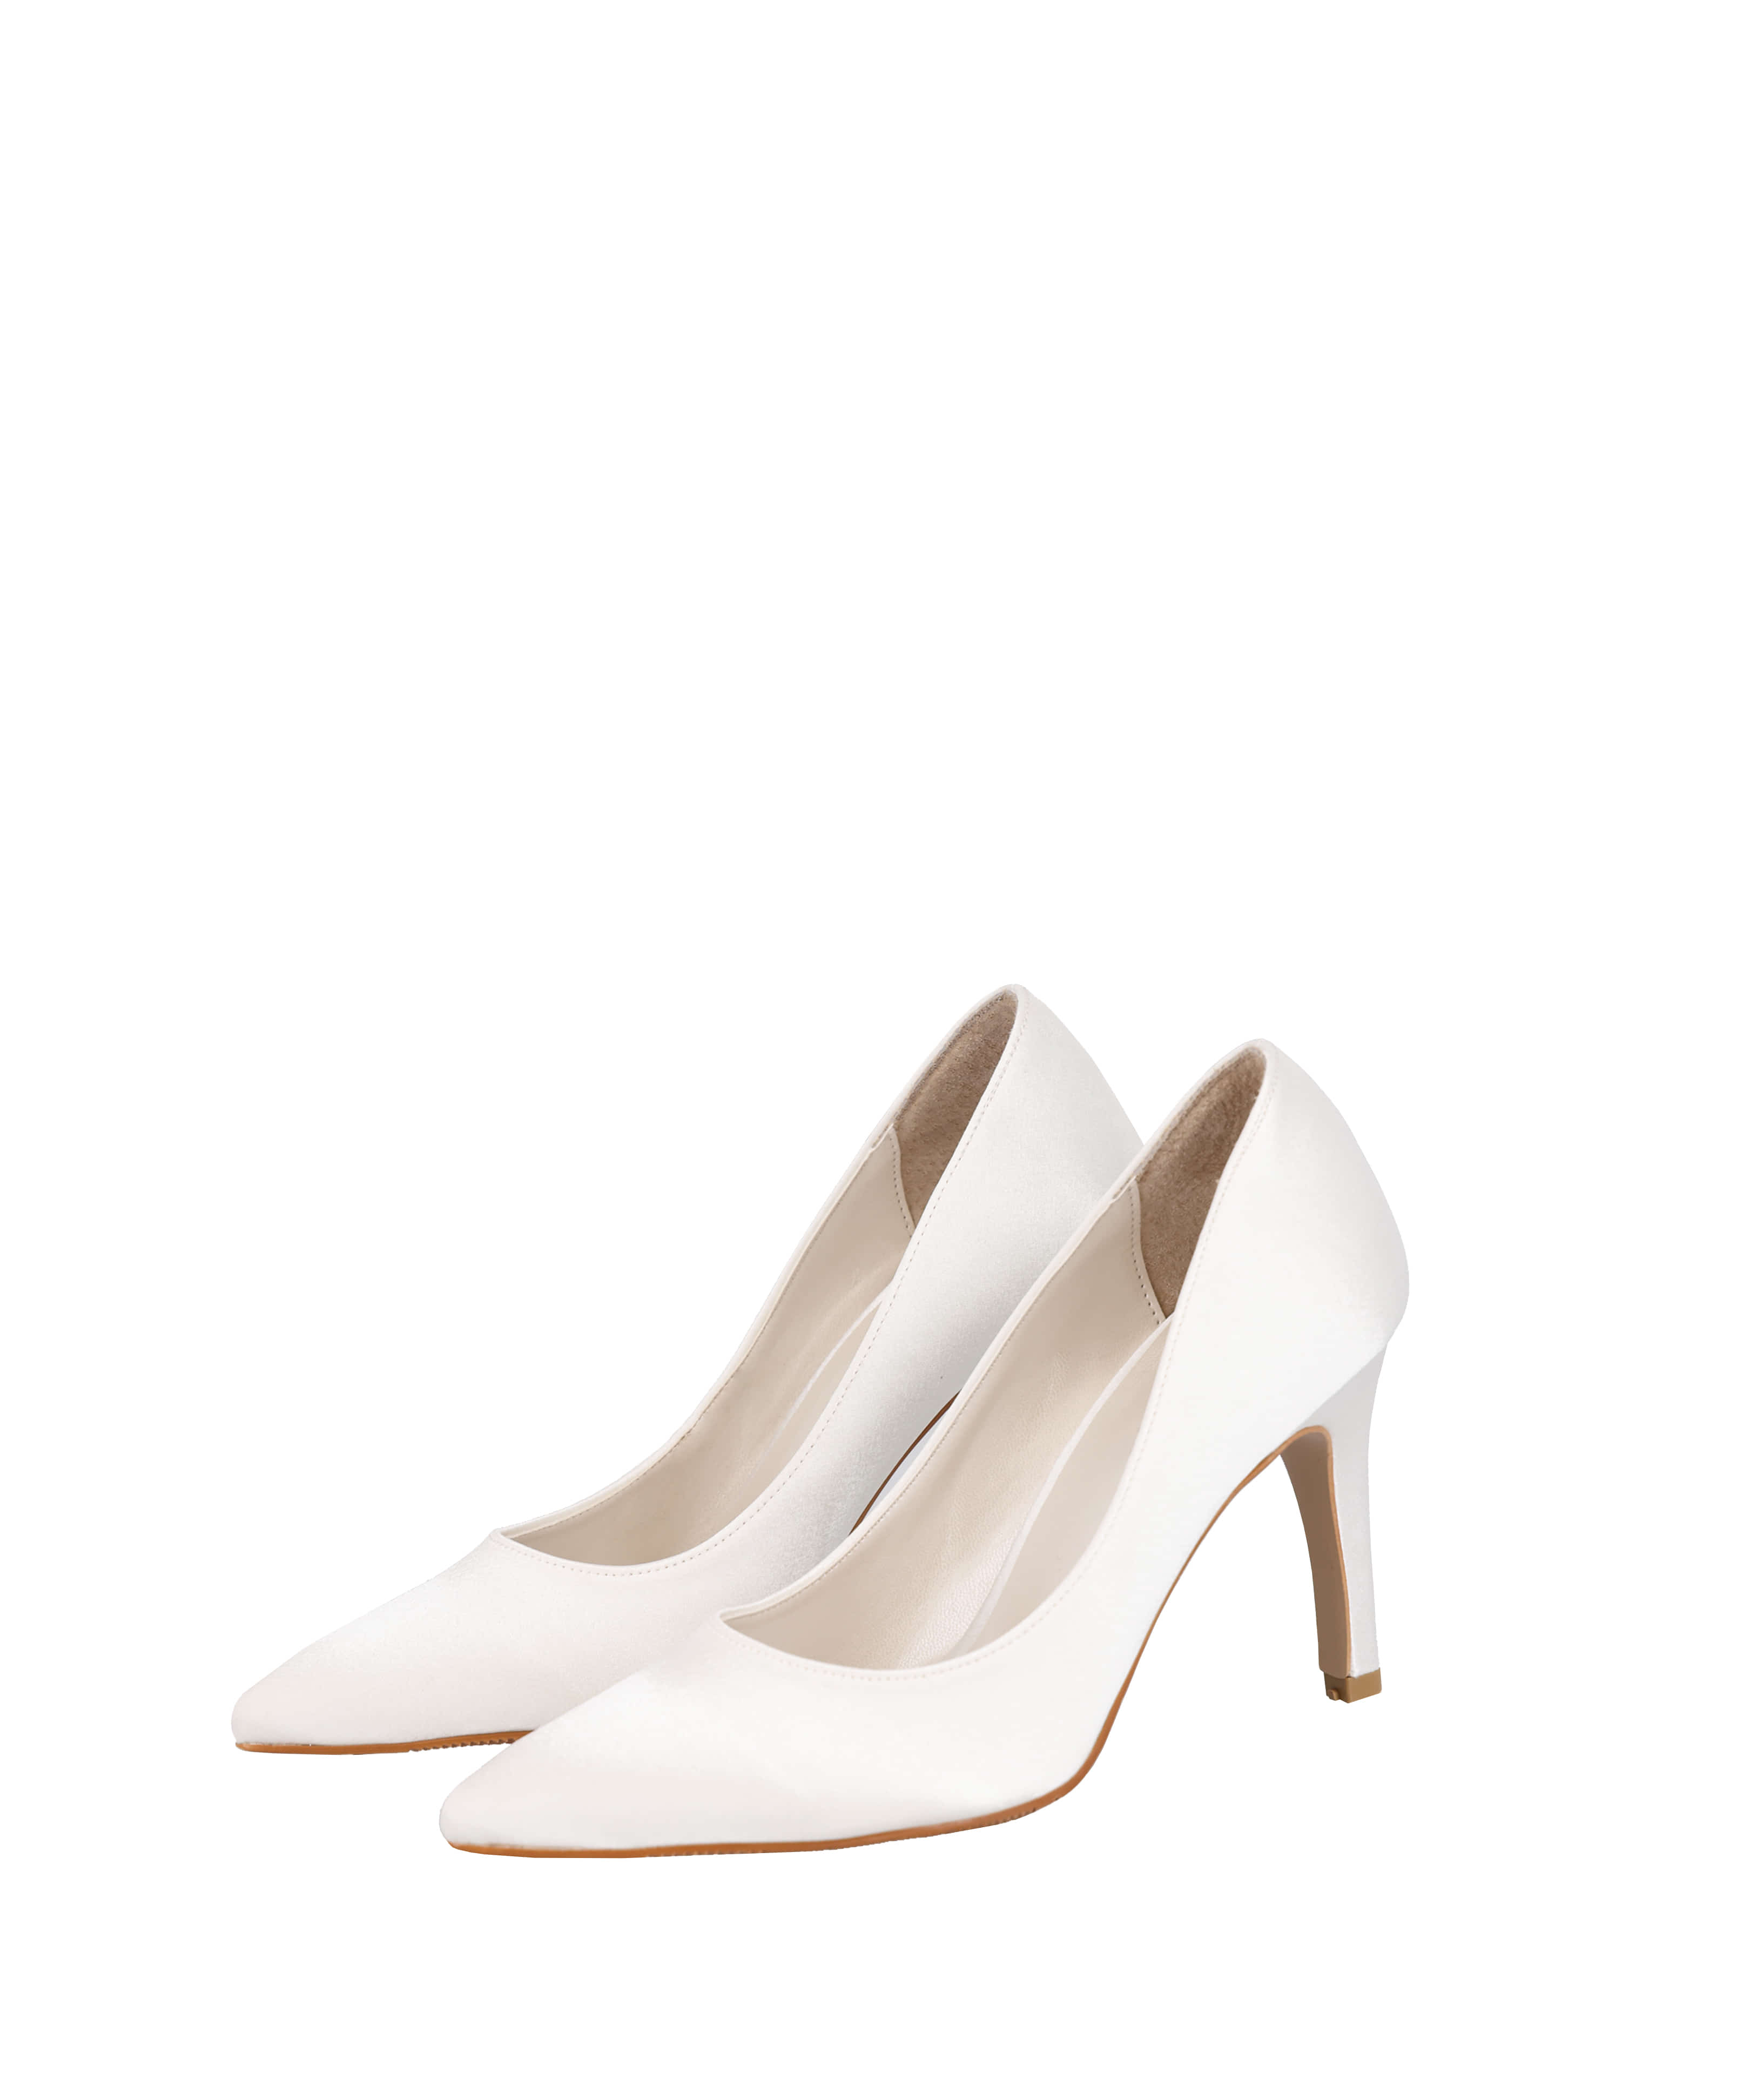 White silk stiletto heels